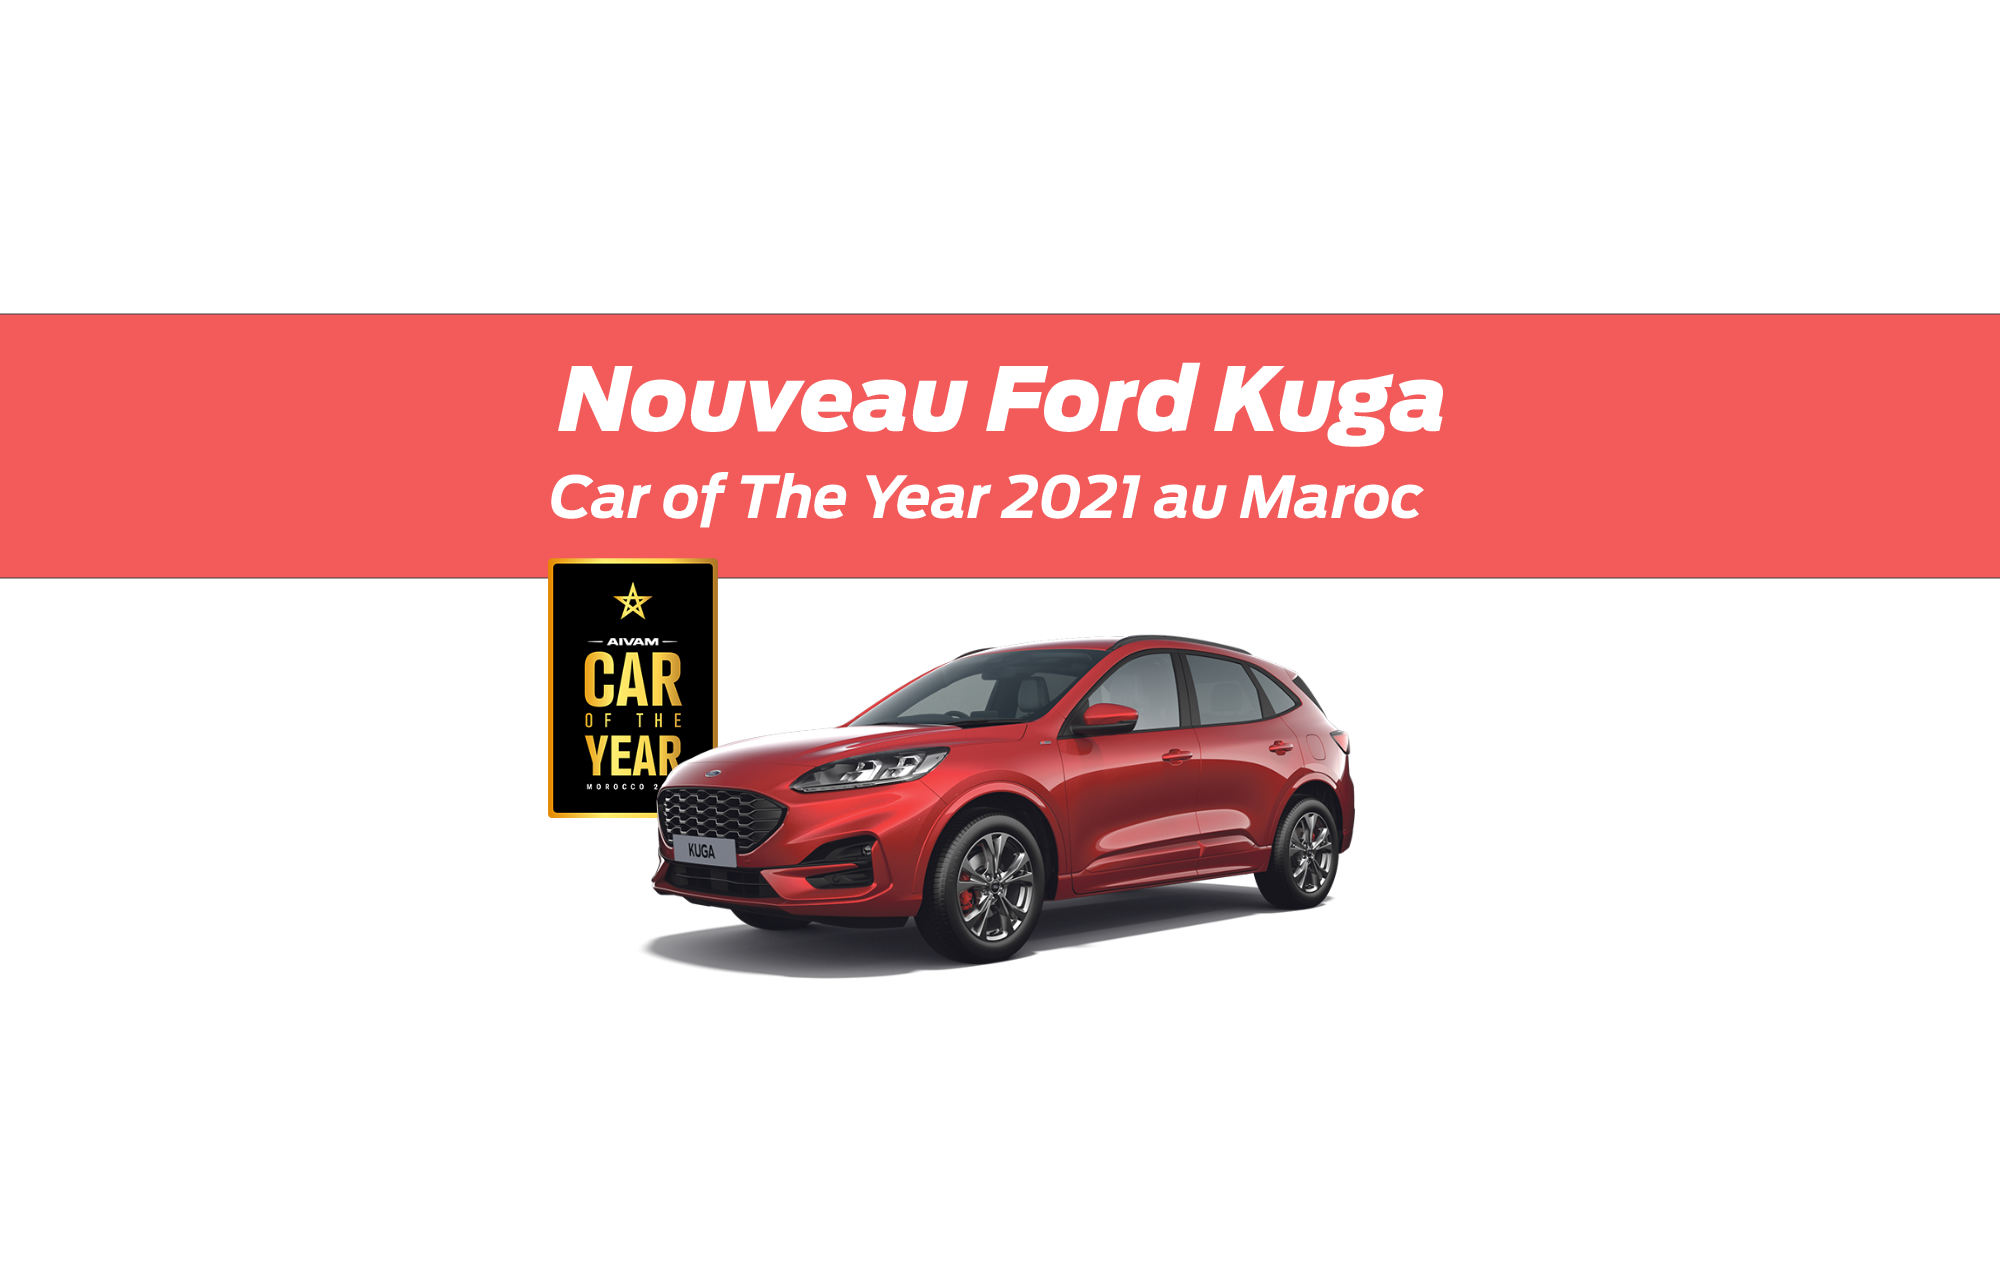 Le Nouveau Ford Kuga élu « Car of the Year 2021 » au Maroc